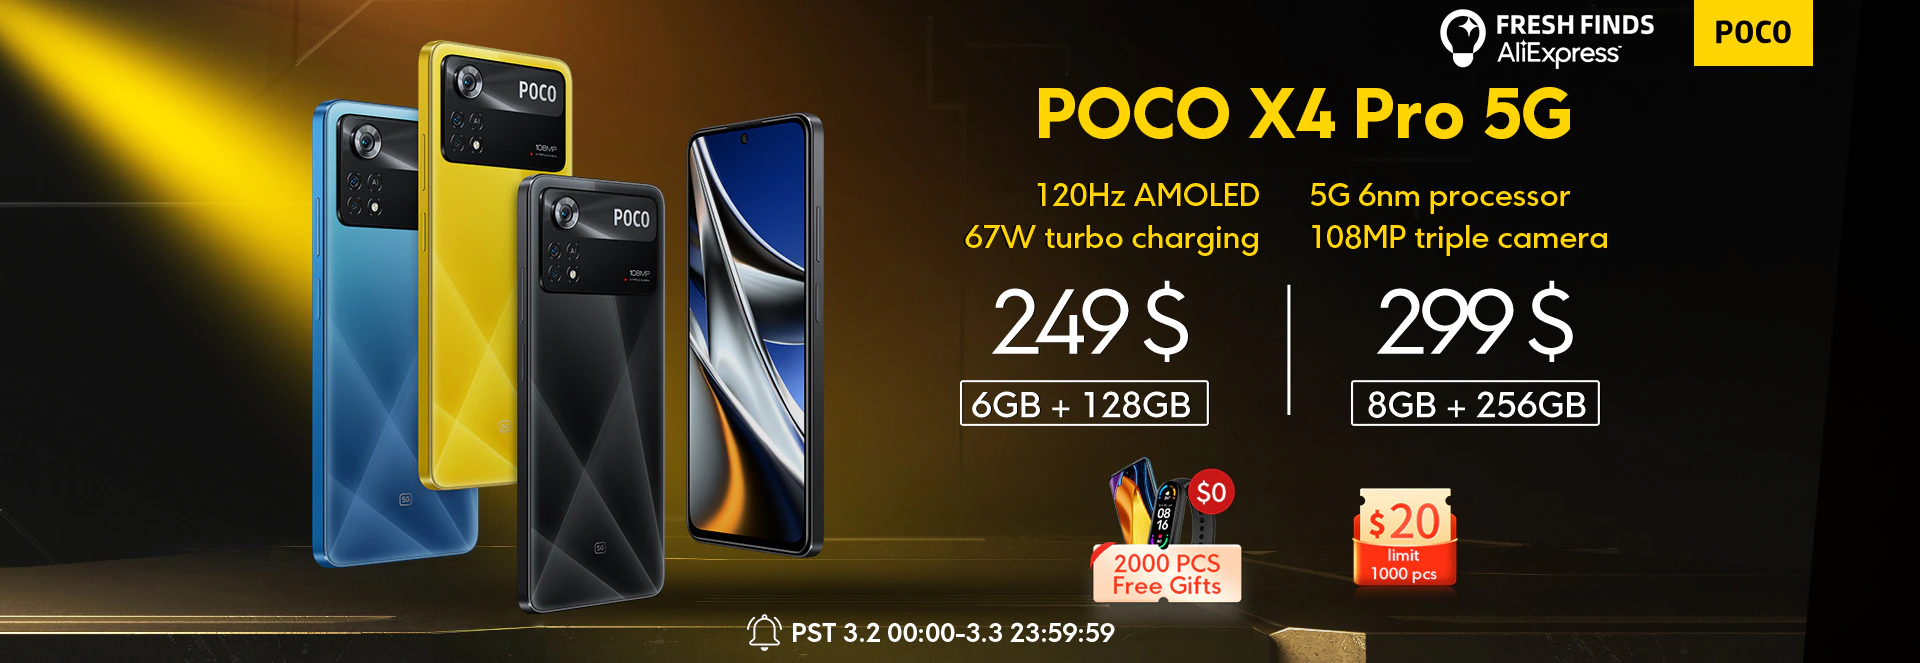 Распродажа смартфонов POCO X4 Pro 5G со скидкой